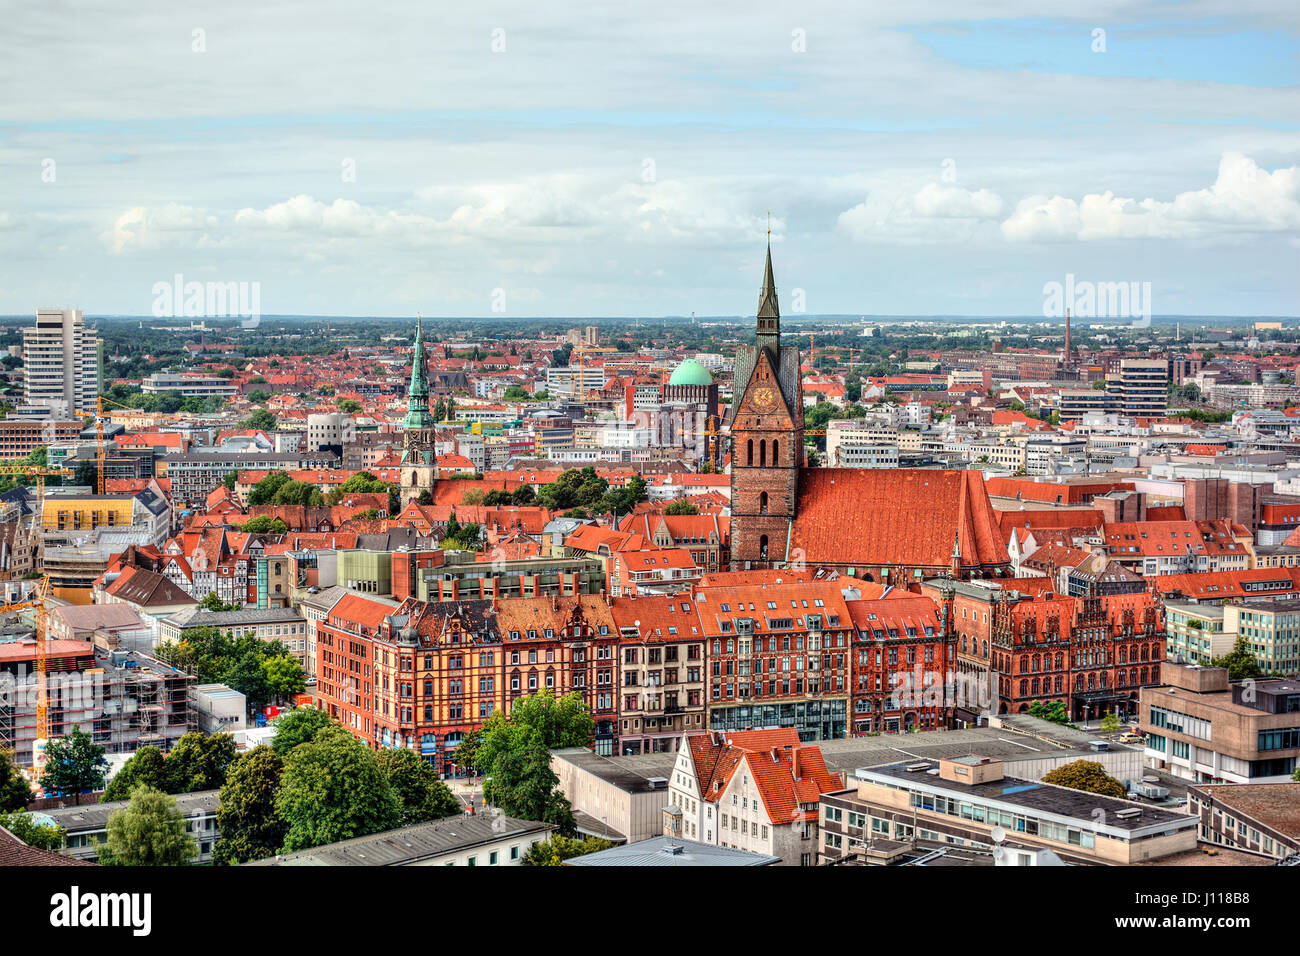 City skyline, Hanover, Germany Stock Photo